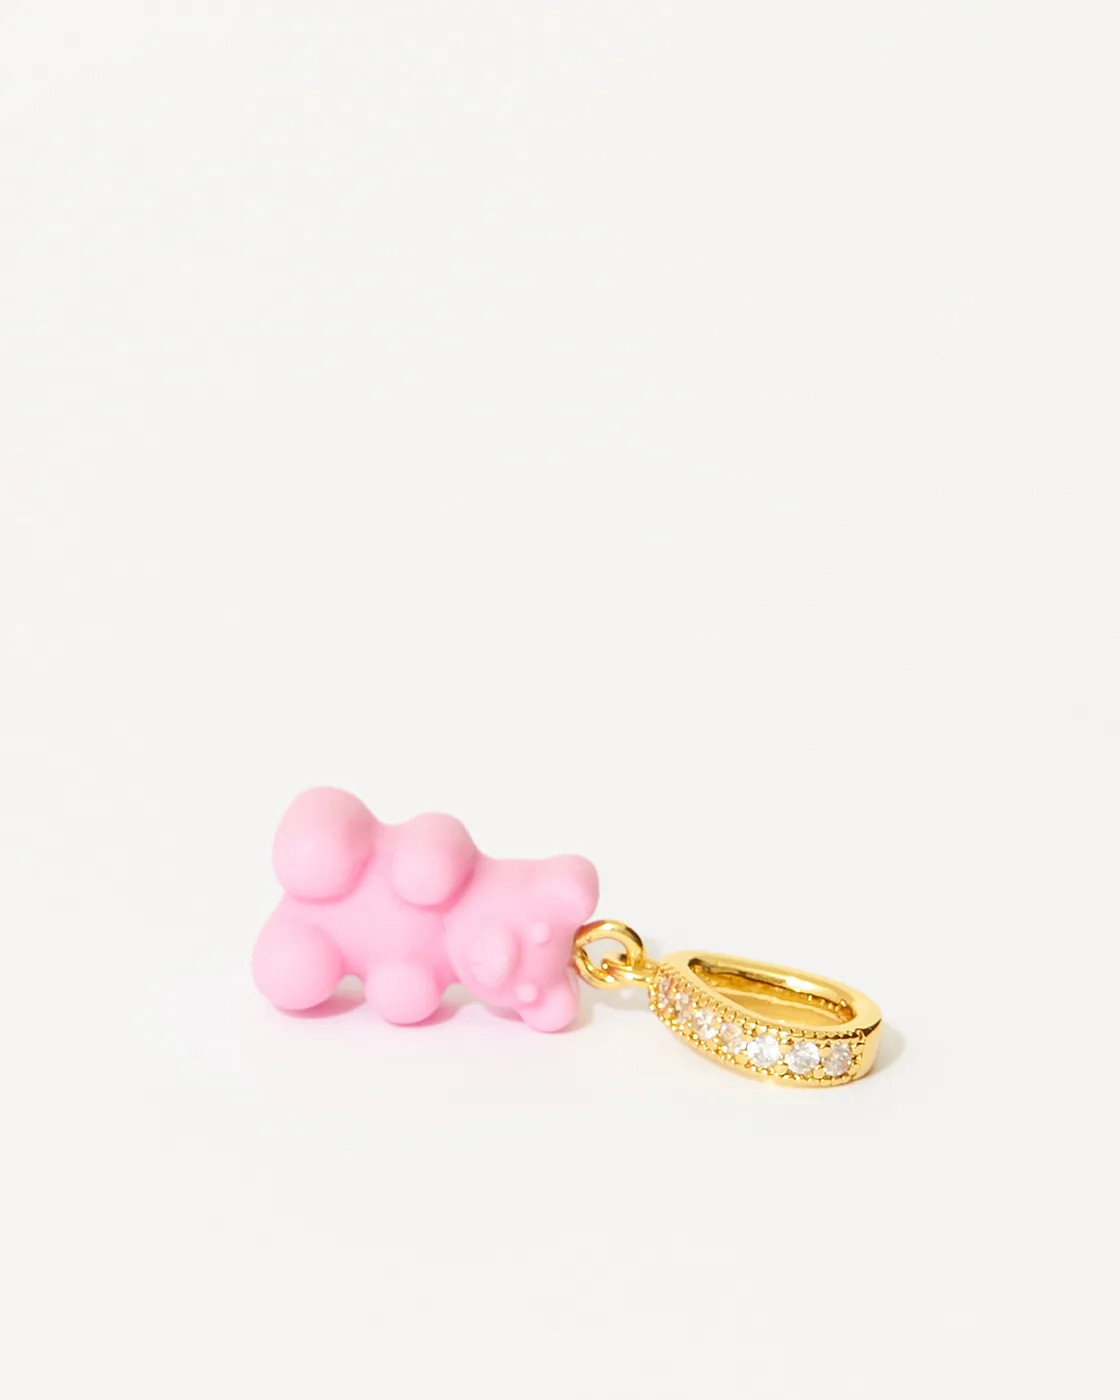 Nostalgie-Bär Vergoldeter Zirkonia-Anhänger aus Kunstharz mit Pave-Verbinder - Candy pink